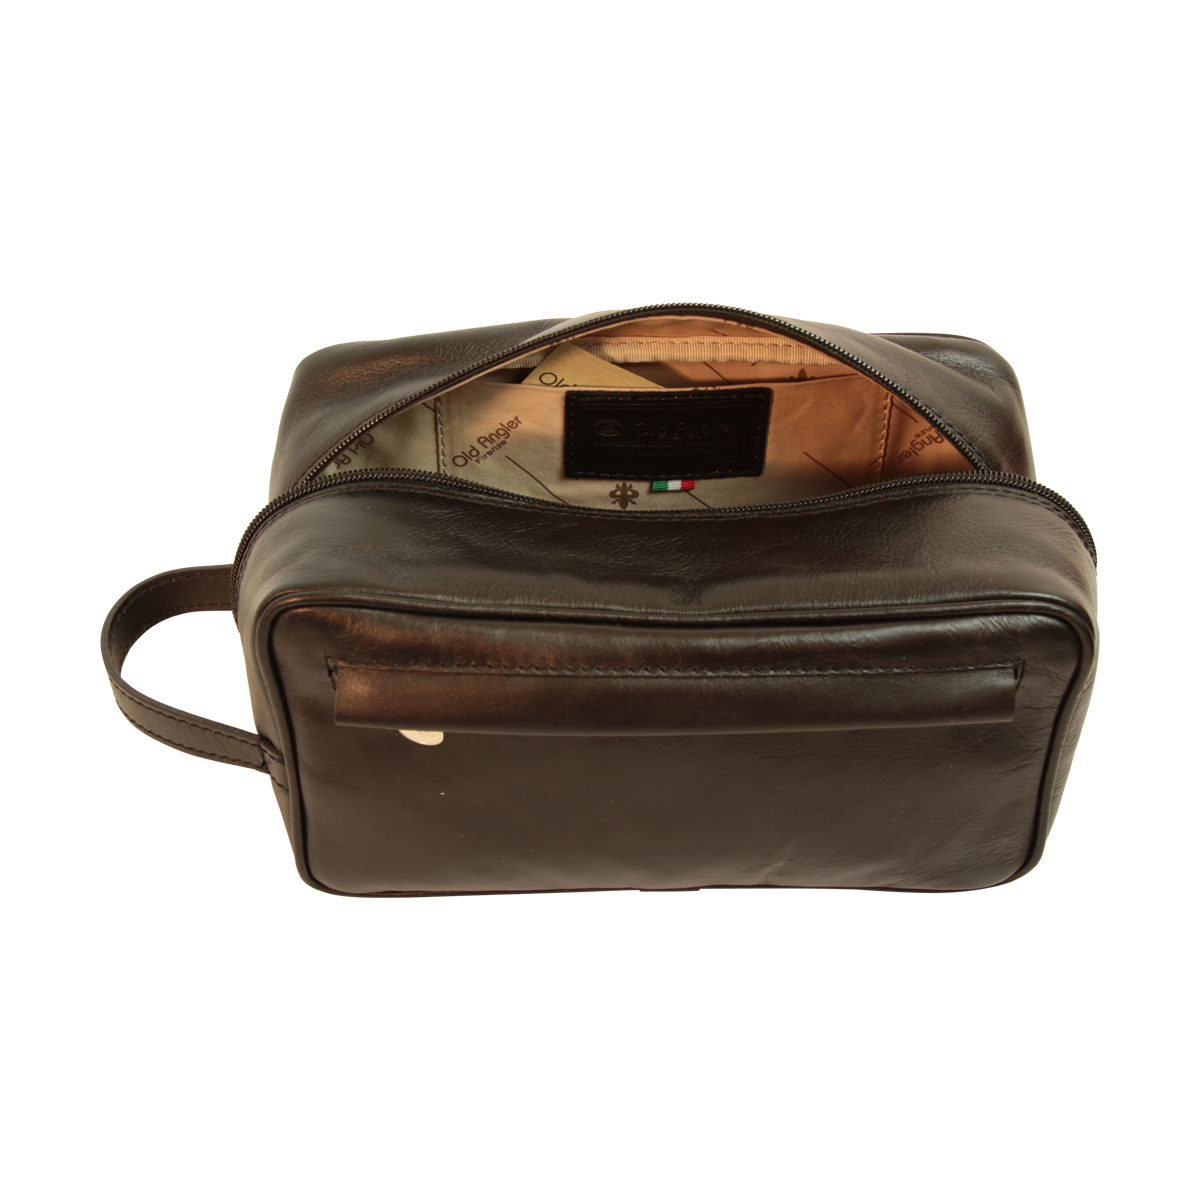 Full-grain calfskin leather beauty case- Black 078989NE | 078989NE US | Old Angler Firenze